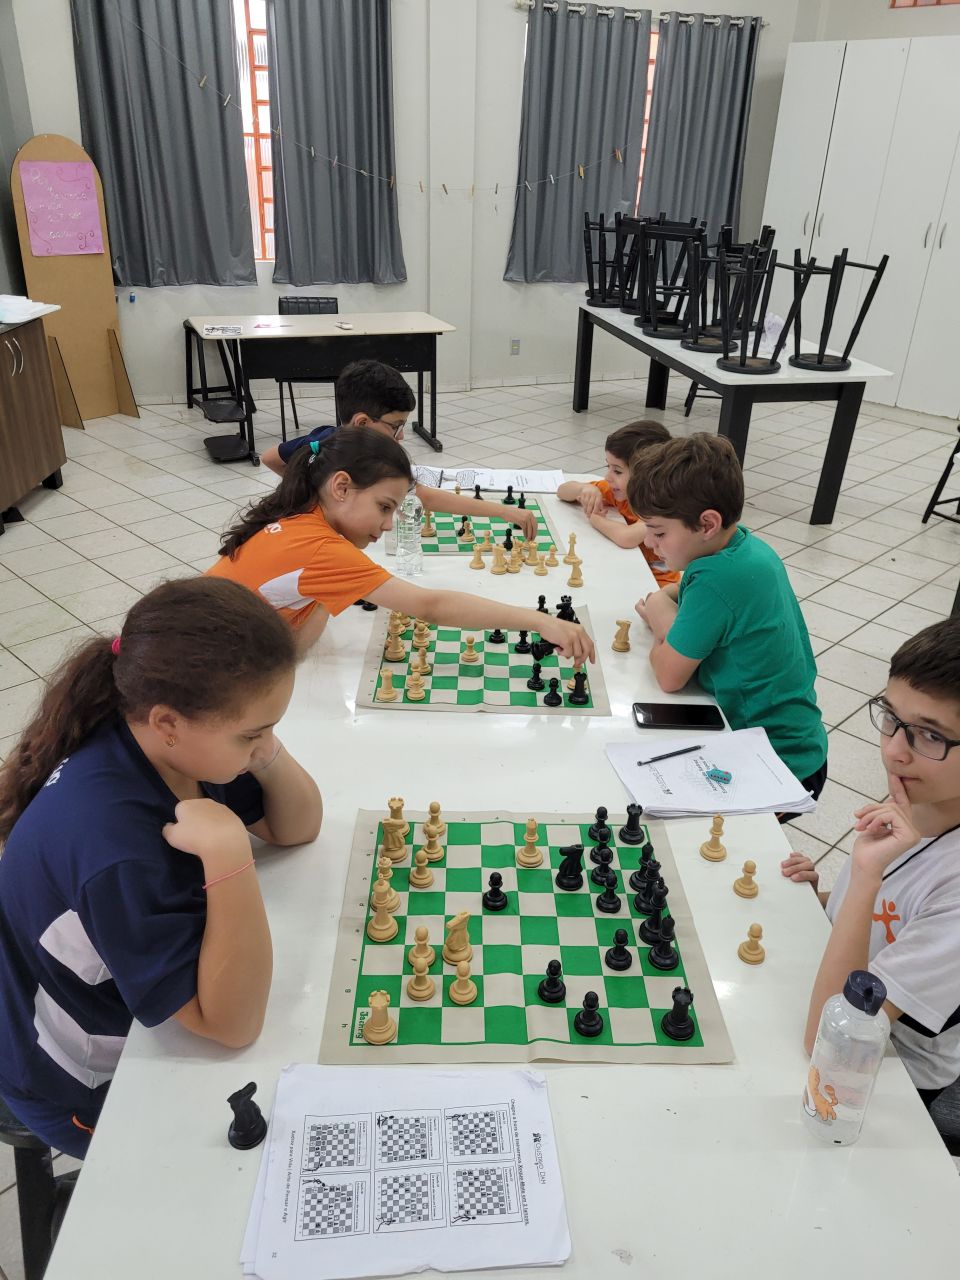 Psiquiatria comprova: jogar xadrez faz bem às crianças hiperativas